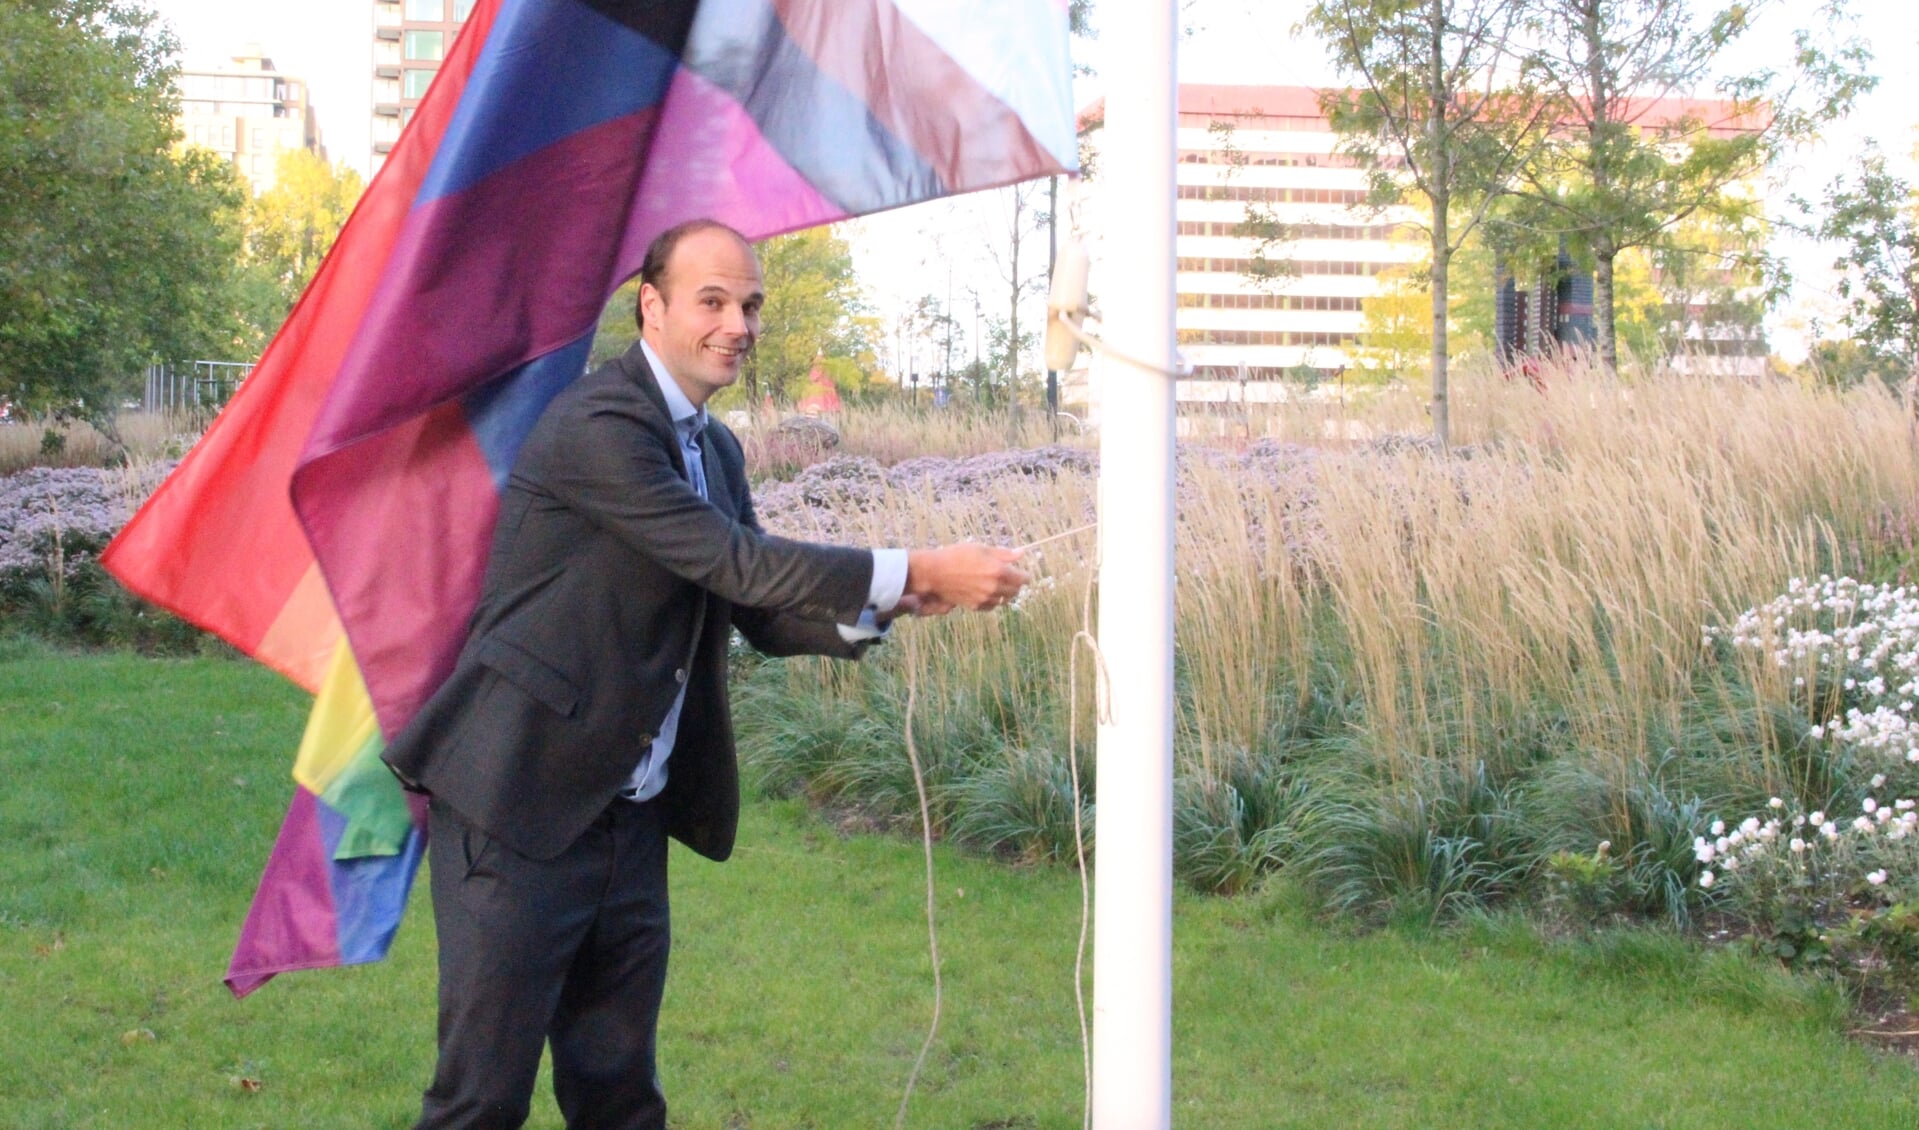 Wethouder Gijs van Malsen (o.a. Emancipatie, PvdA) hijst dinsdag 11 oktober de regenboogvlag voor het stadhuis.